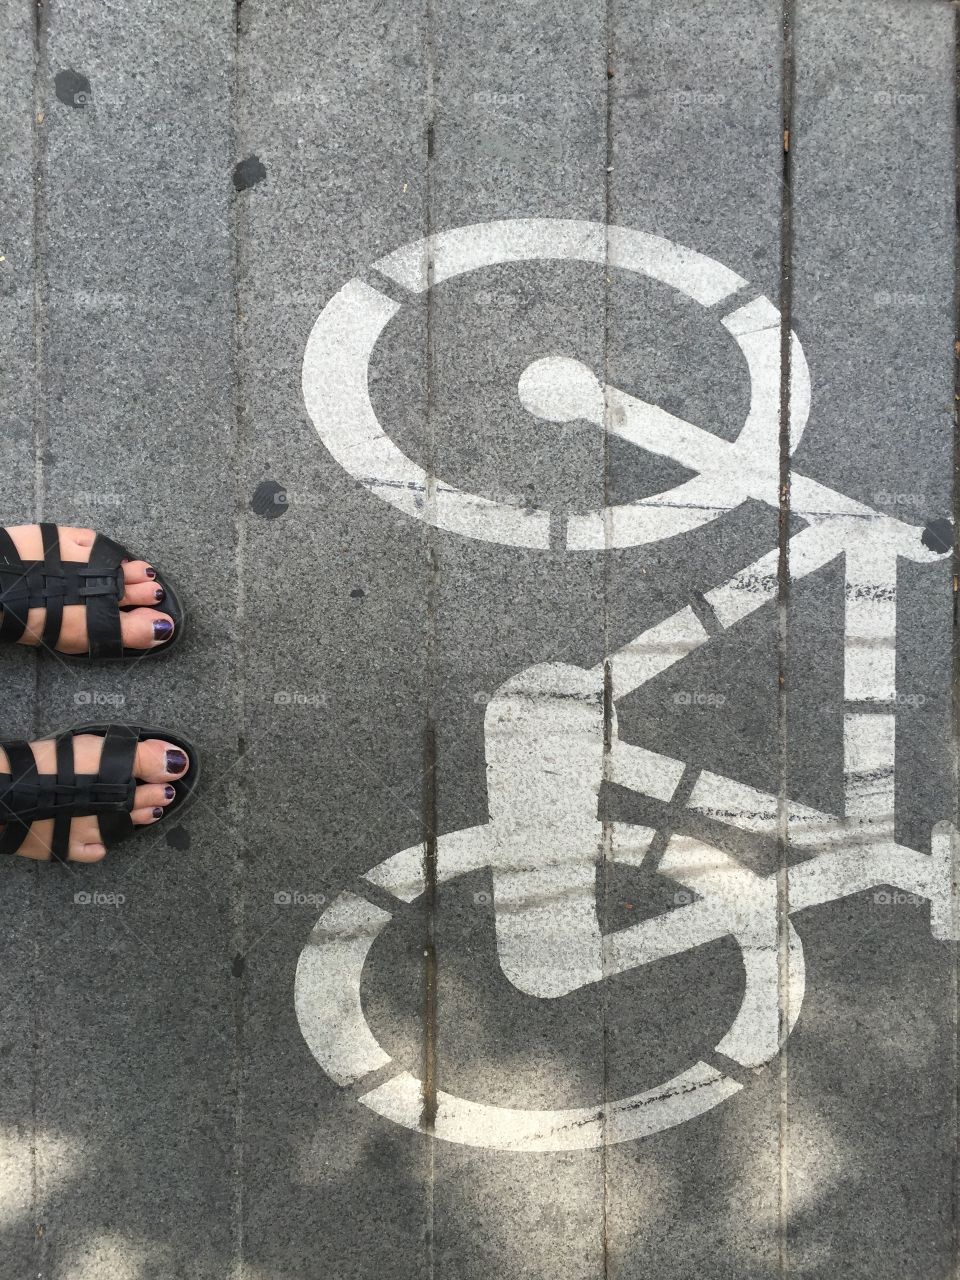 Feet on the biking lane 